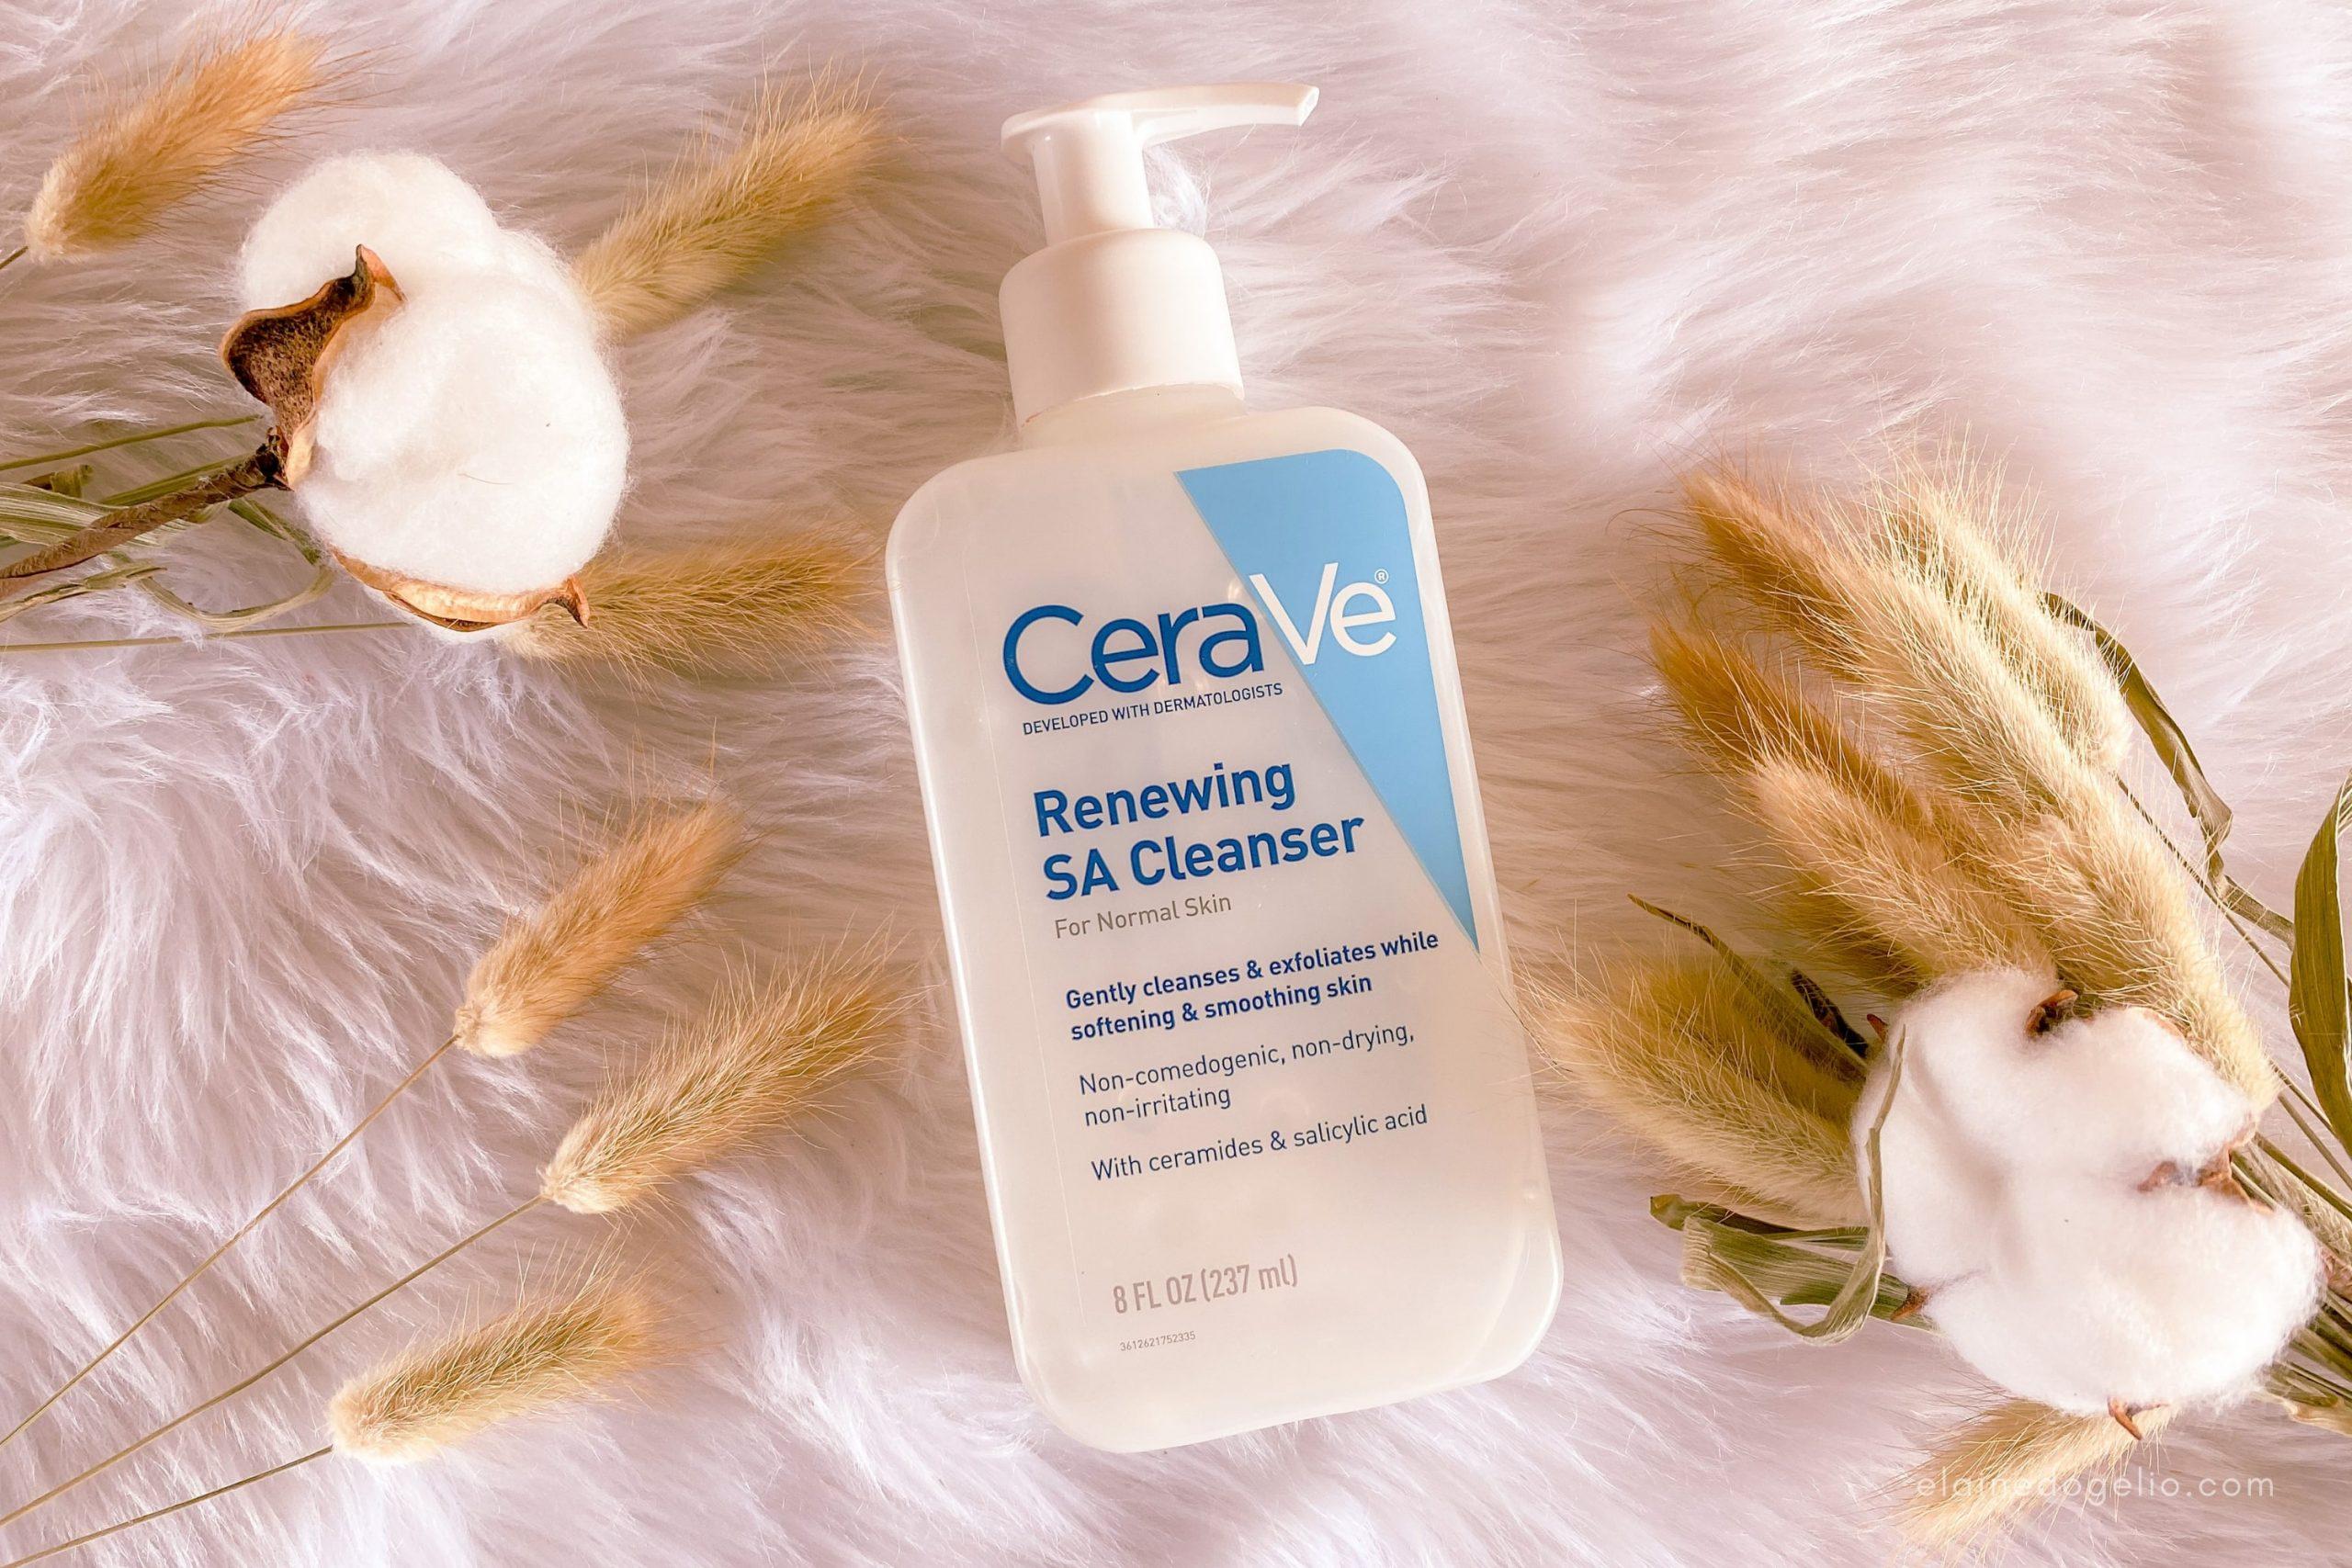 Phiên bản sữa rửa mặt CeraVe Renewing SA Cleanser giúp tẩy da chết làm mịn màng làn da hiệu quả (Nguồn: internet)